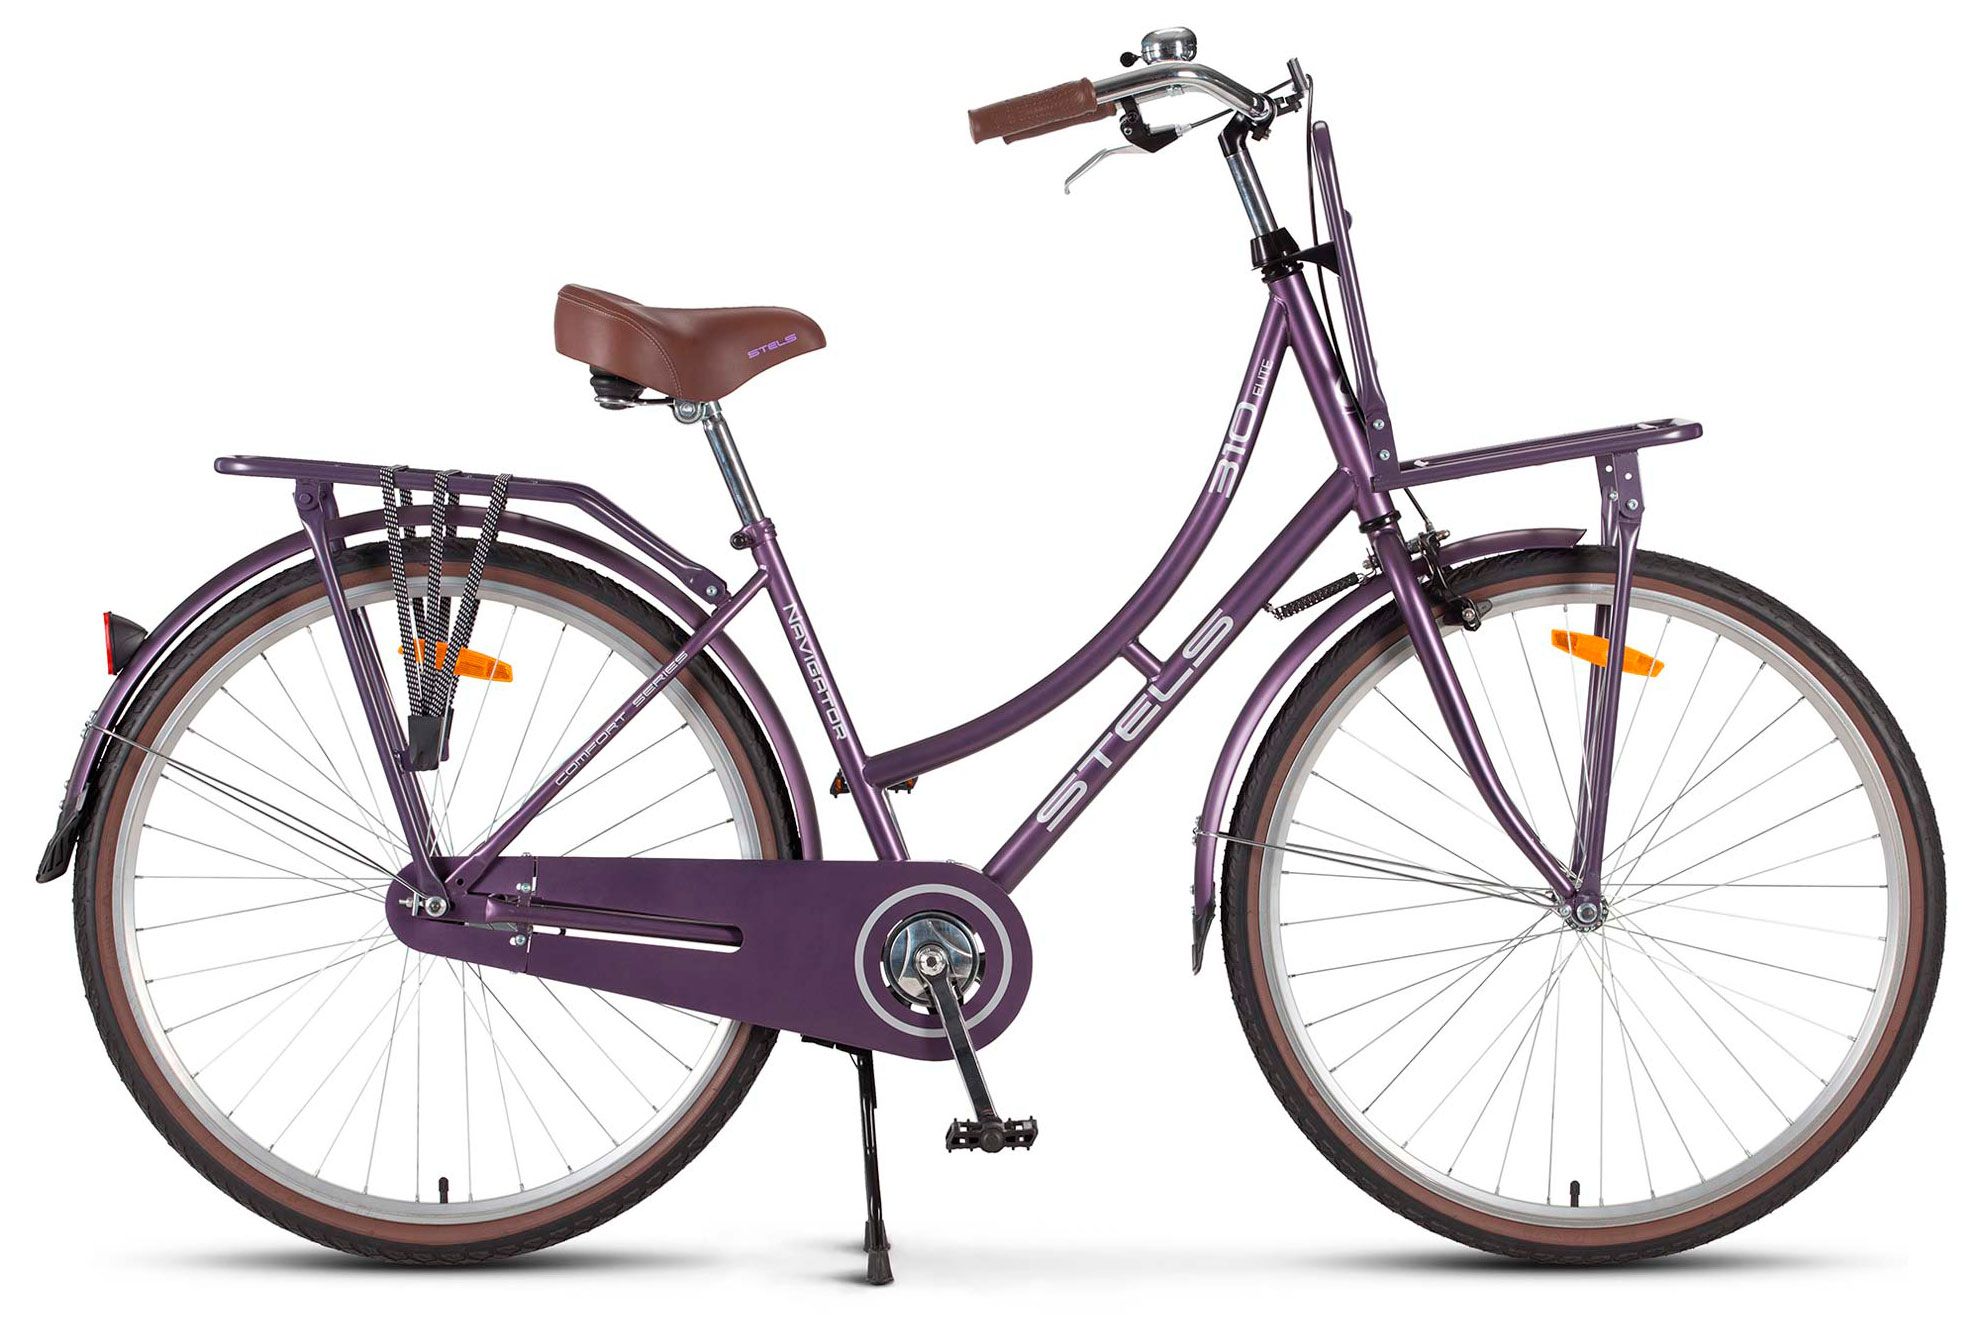  Велосипед трехколесный детский велосипед Stels Navigator 310 Lady 28 (V020) 2018